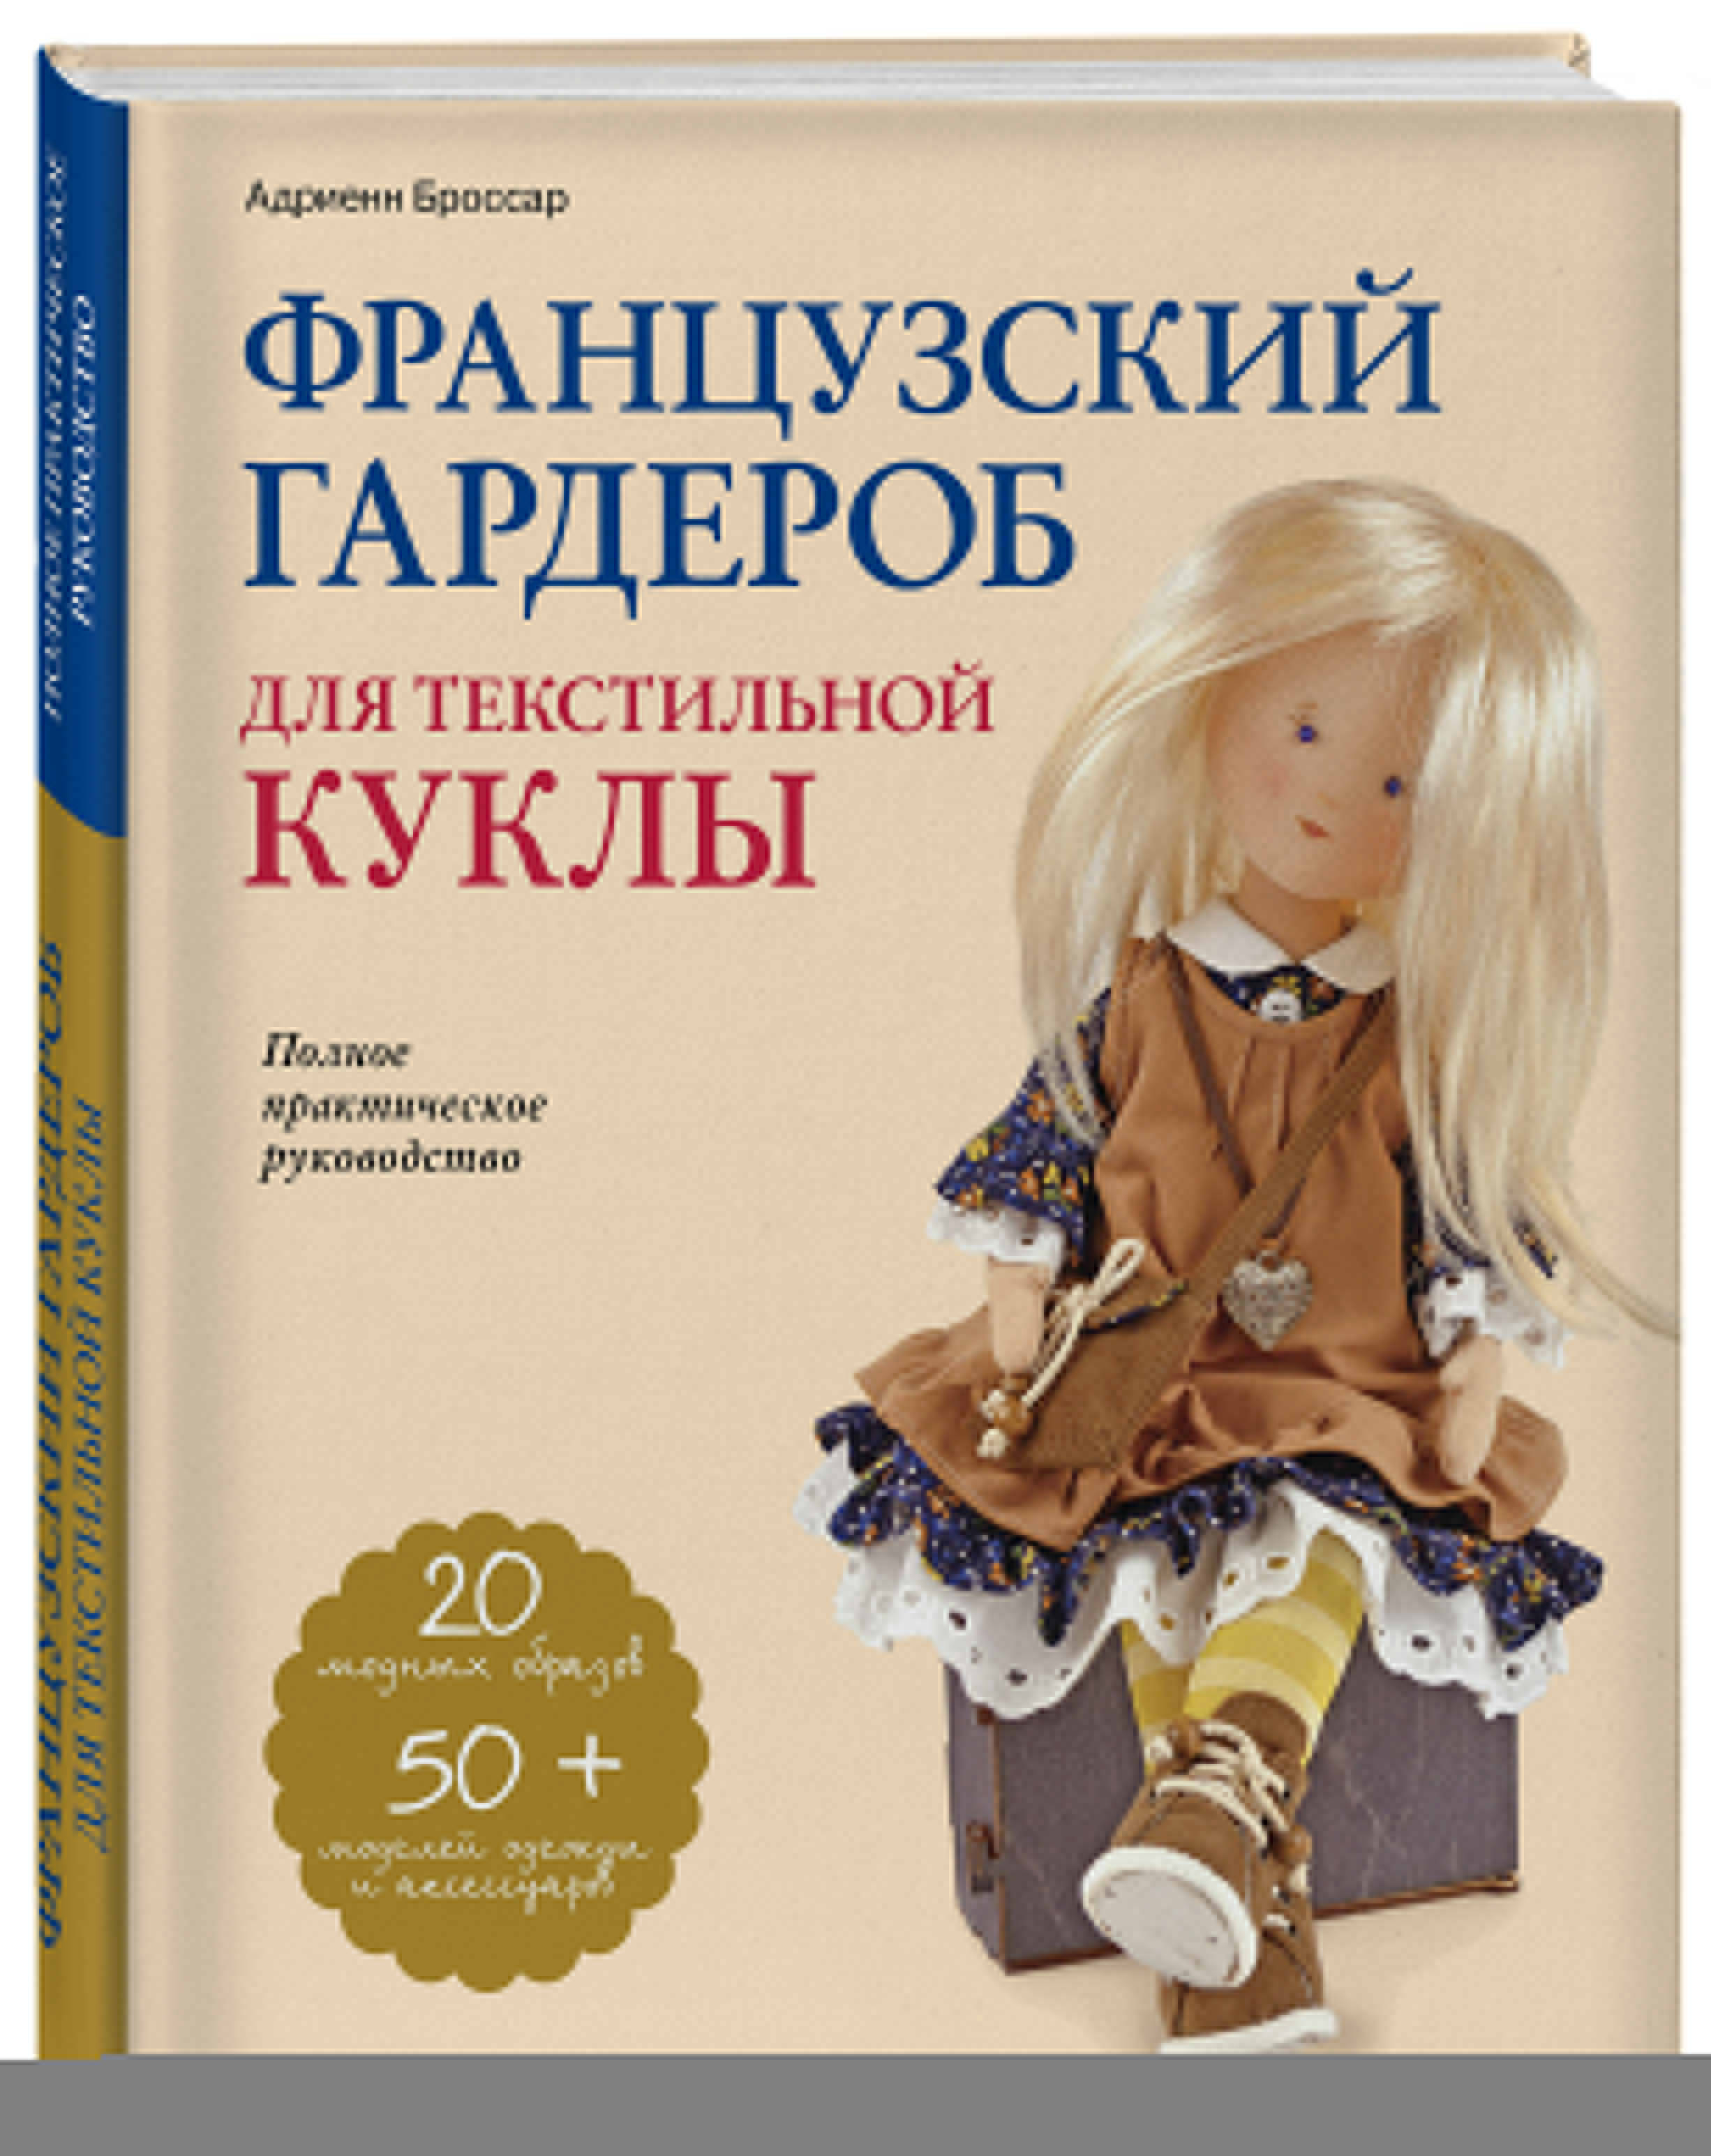 Пошив одежды для кукол в Москве